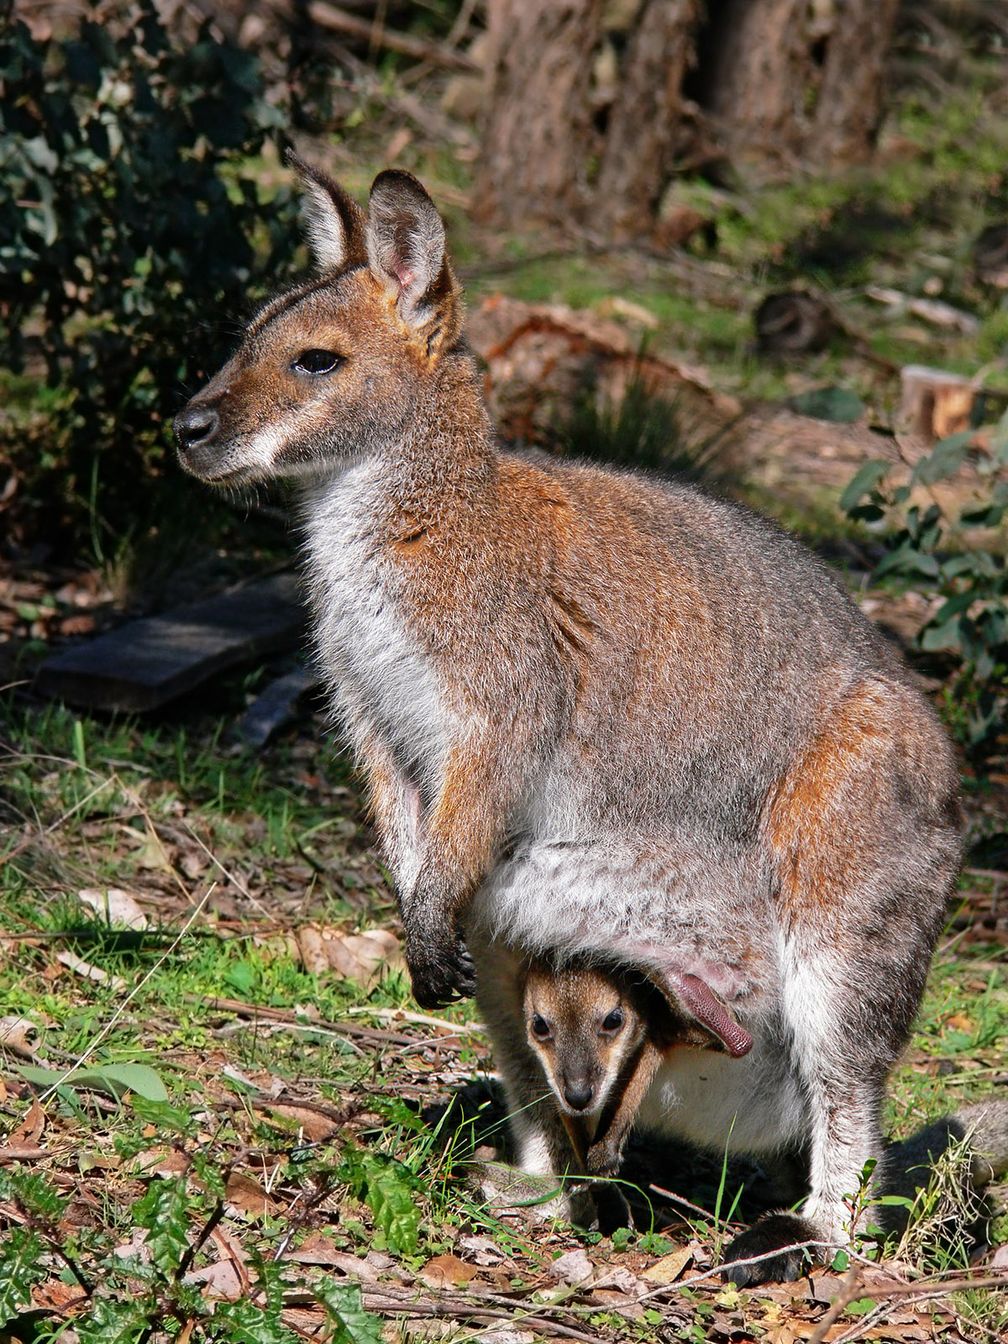 Das Rotnackenwallaby (Macropus rufogriseus) ist eine mittelgroße Känguruart aus der Gruppe der Wallabys. Es gibt zwei Unterarten, M. r. banksianus auf dem australischen Festland und M. r. rufogriseus auf Tasmanien. Die tasmanische Unterart wird Bennett-Wallaby oder Bennett-Känguru genannt.